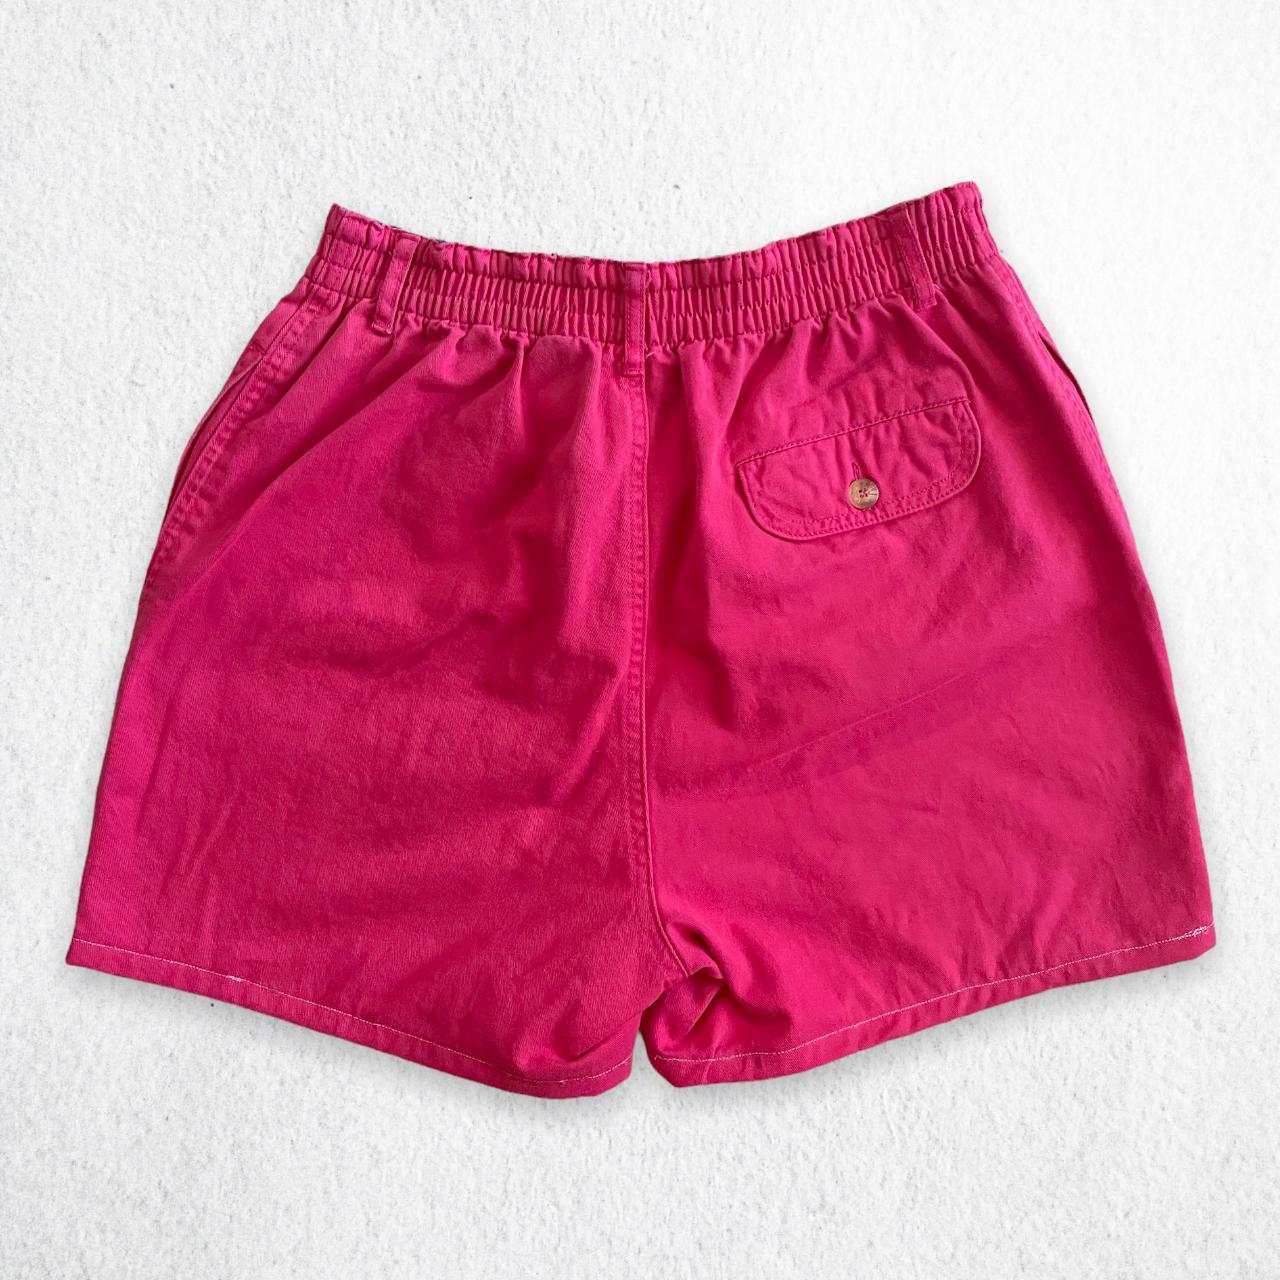 Product Image 3 - night waisted shorts

Upcycled Vintage 80's